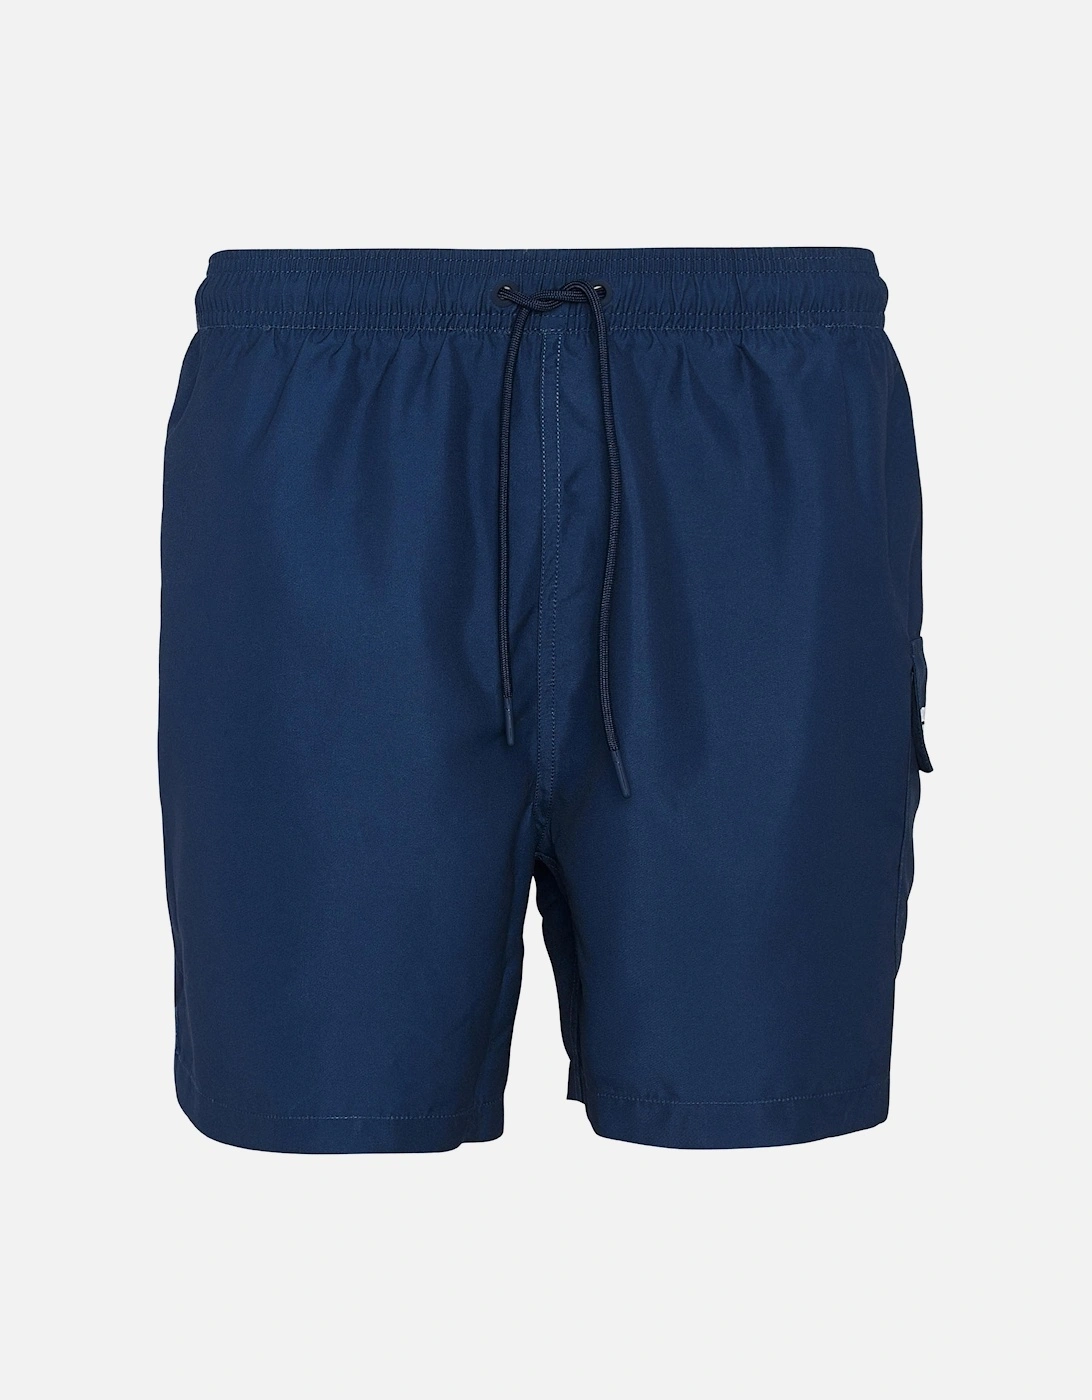 Pocket Mens Swim Shorts